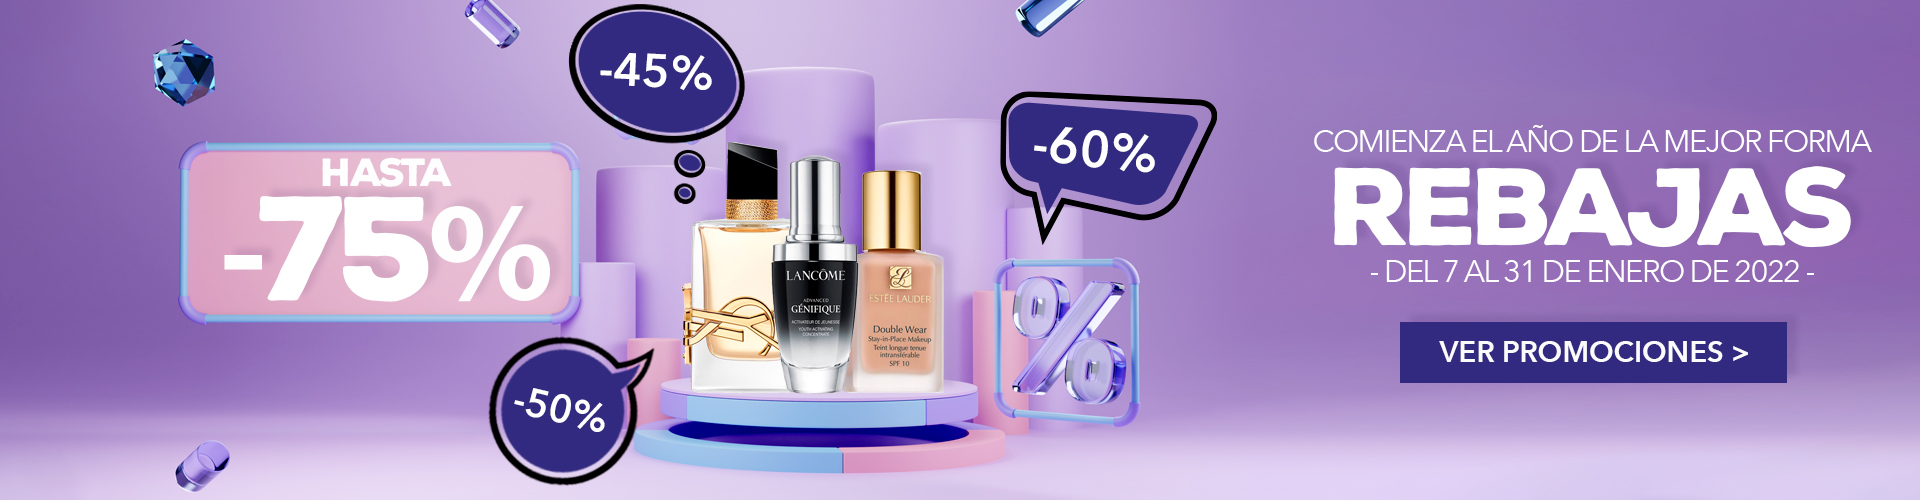 REBAJAS 2022 | Perfumes, Cremas y Maquillaje al Mejor Precio | Prieto.es